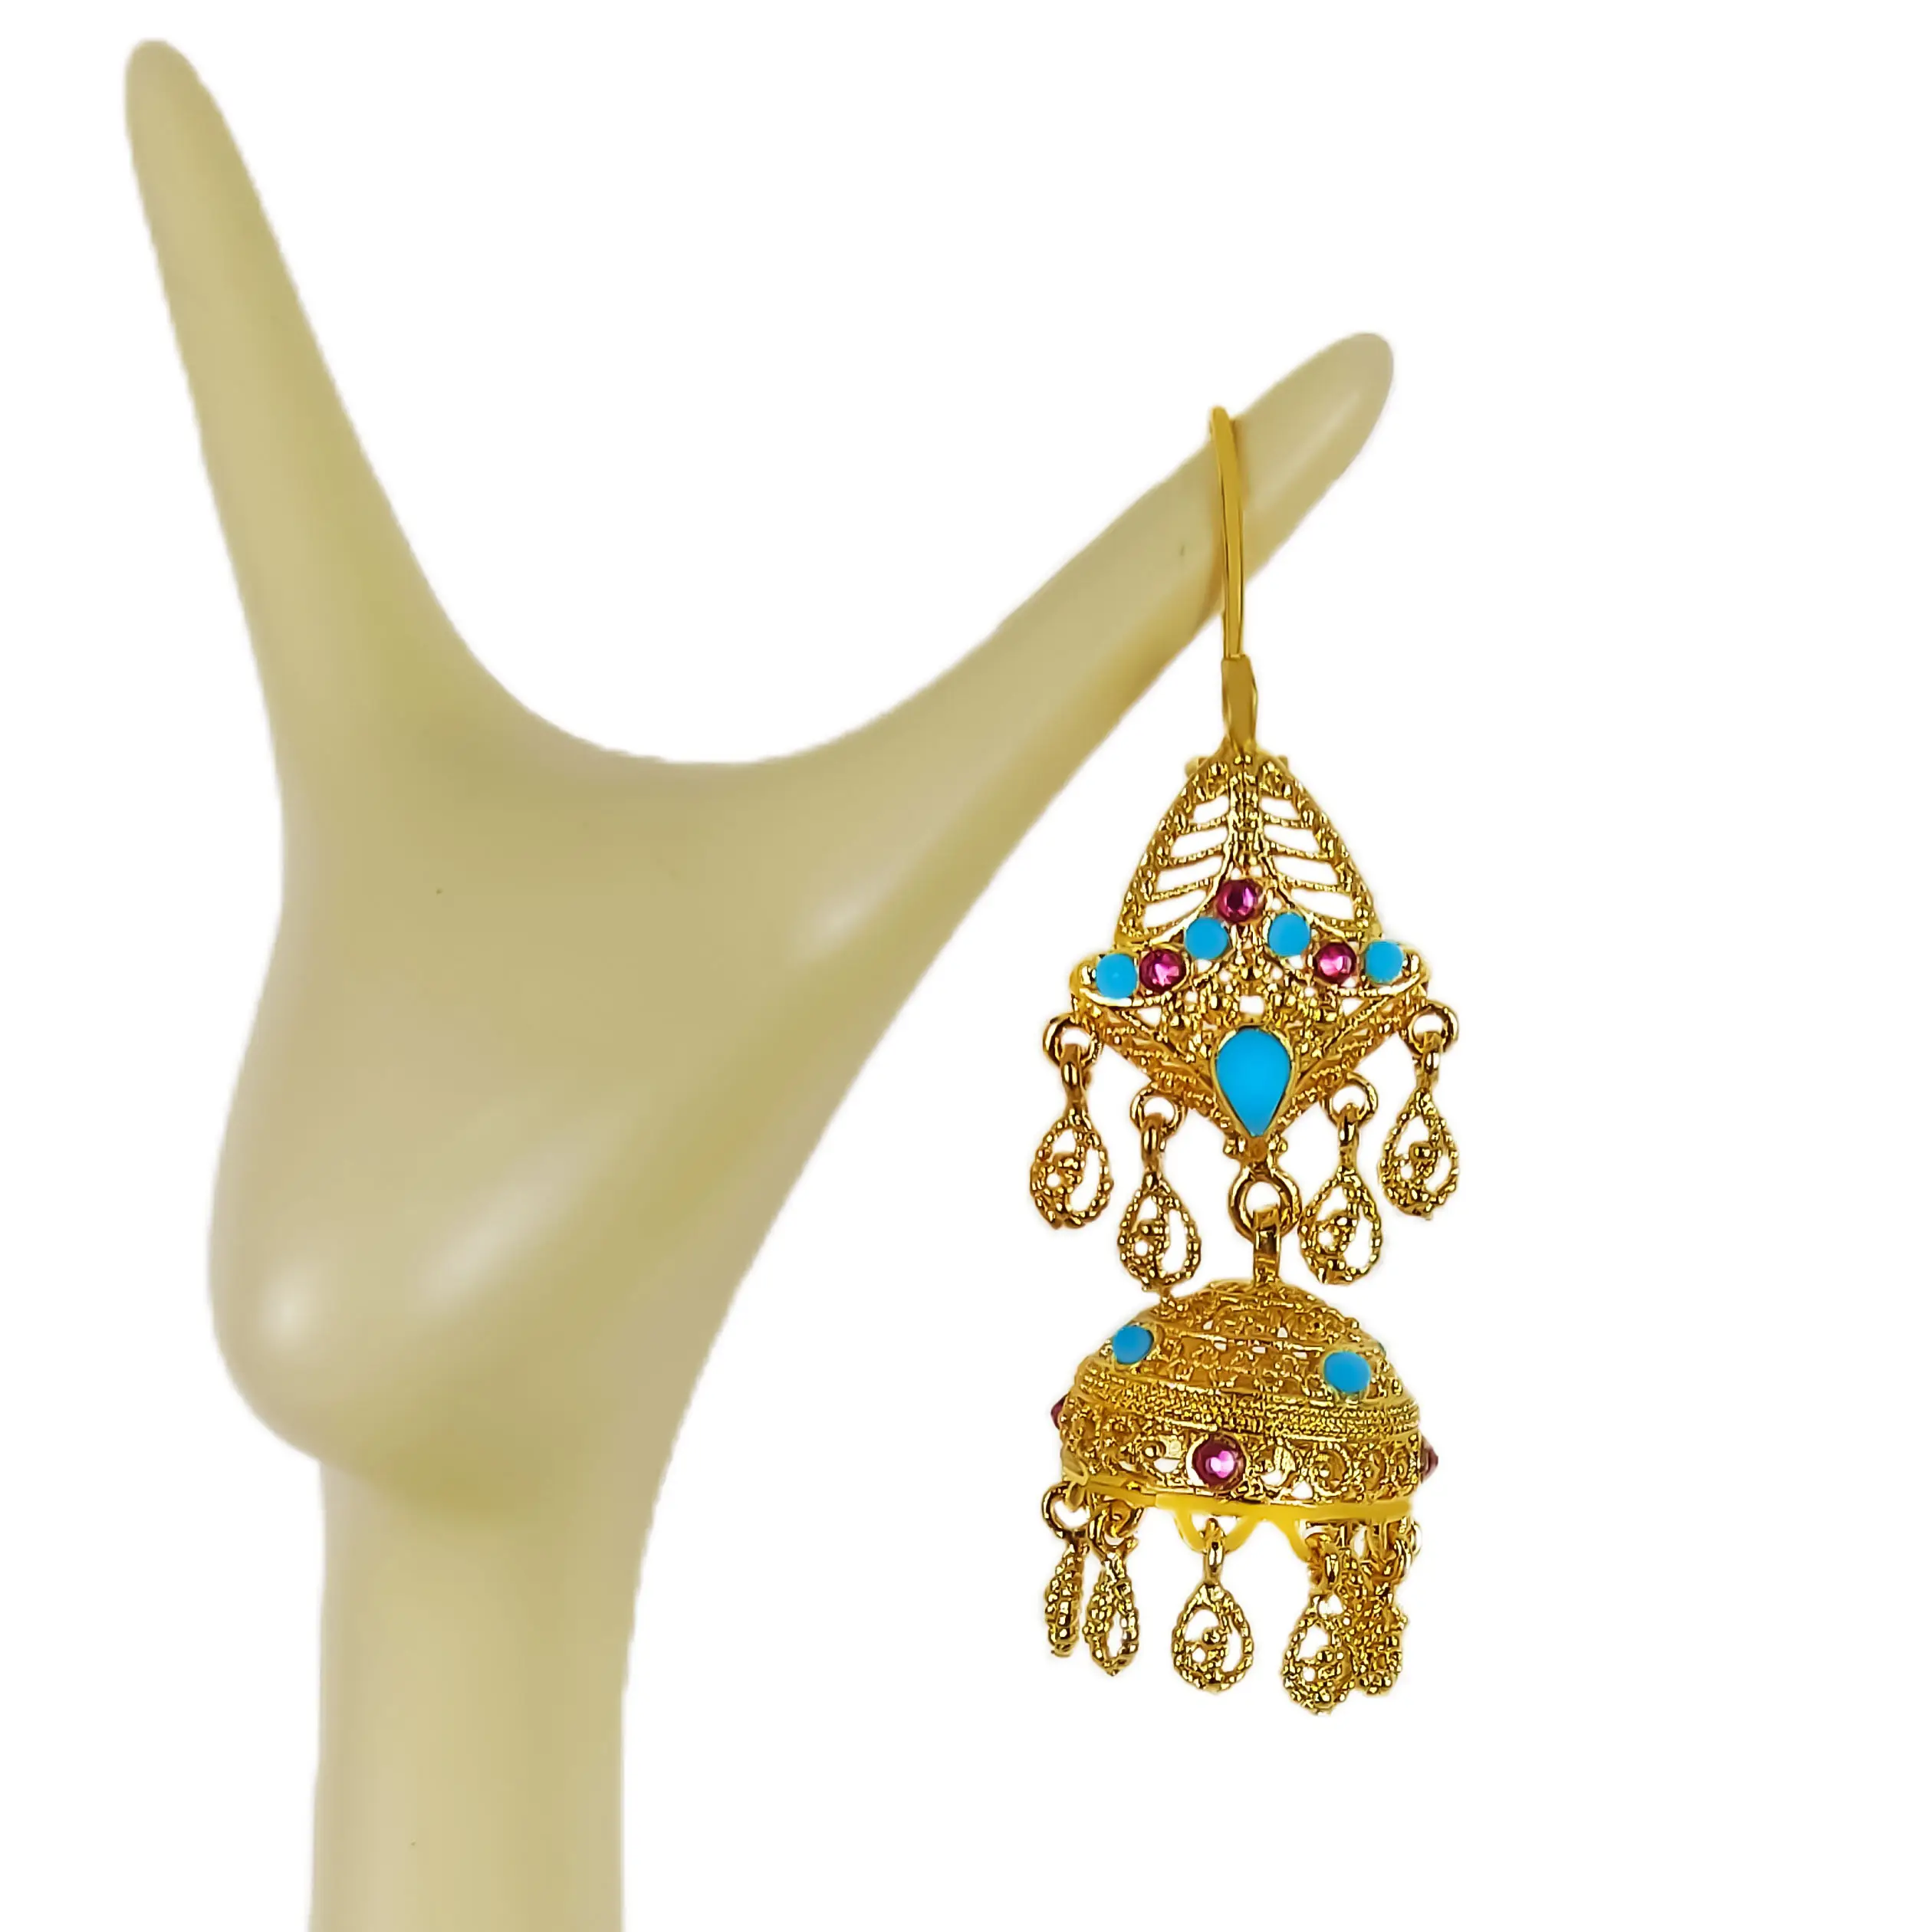 Wholesales विंटेज लंबे लटकन लालटेन घंटी कुंदन Jhumka कान की बाली जातीय रेट्रो प्राचीन चांदी सोने के गहने महिलाओं के लिए लड़कियों